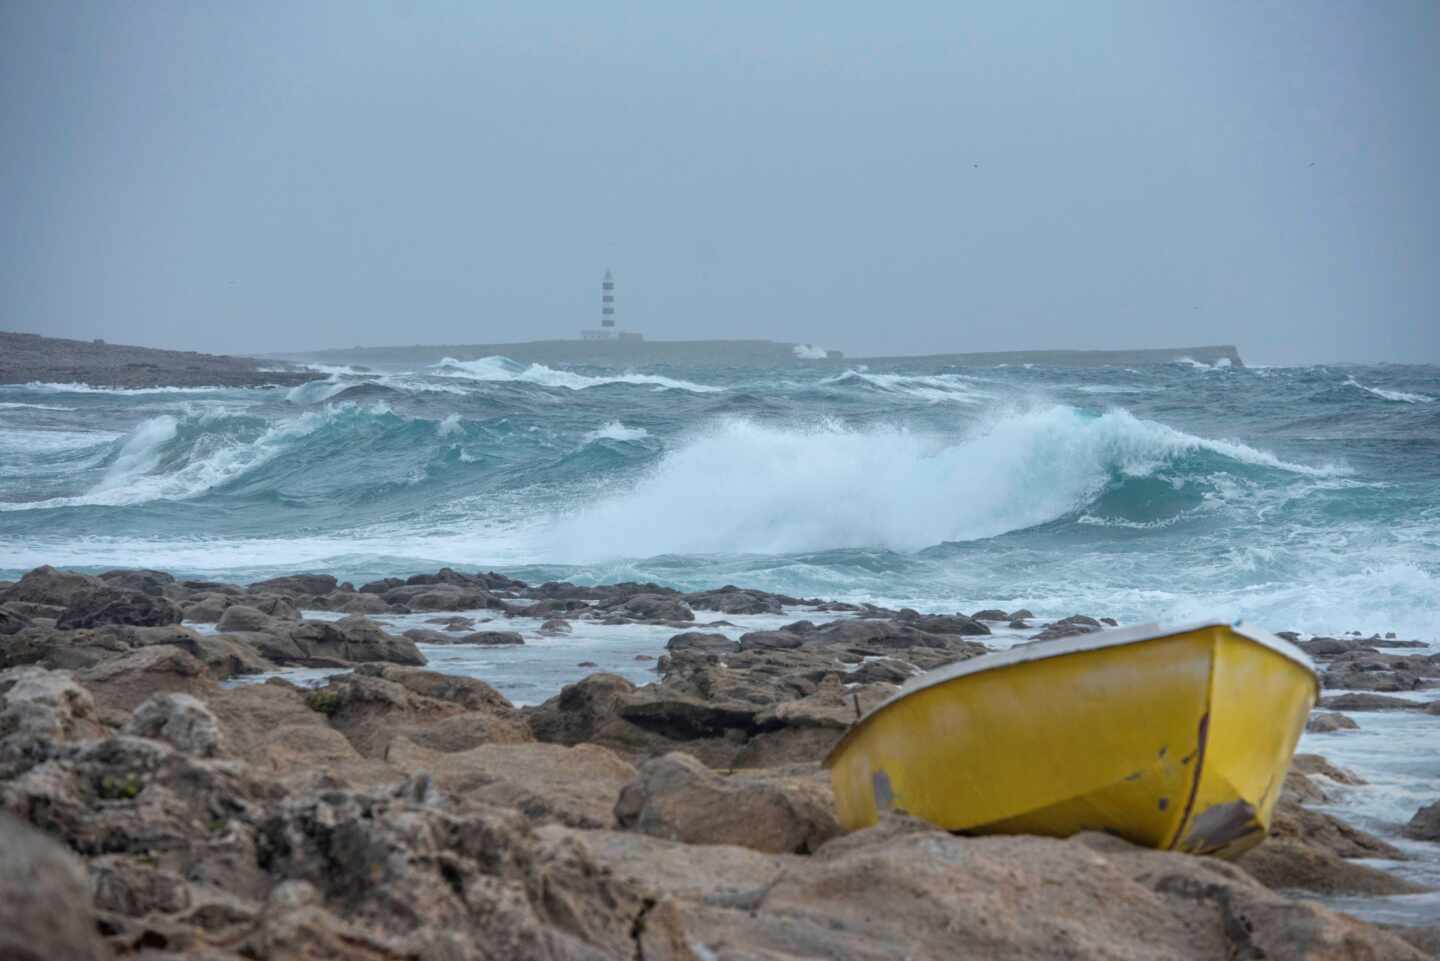 Varias olas rompen en la orilla de la costa de Biniancolla, en Menorca.